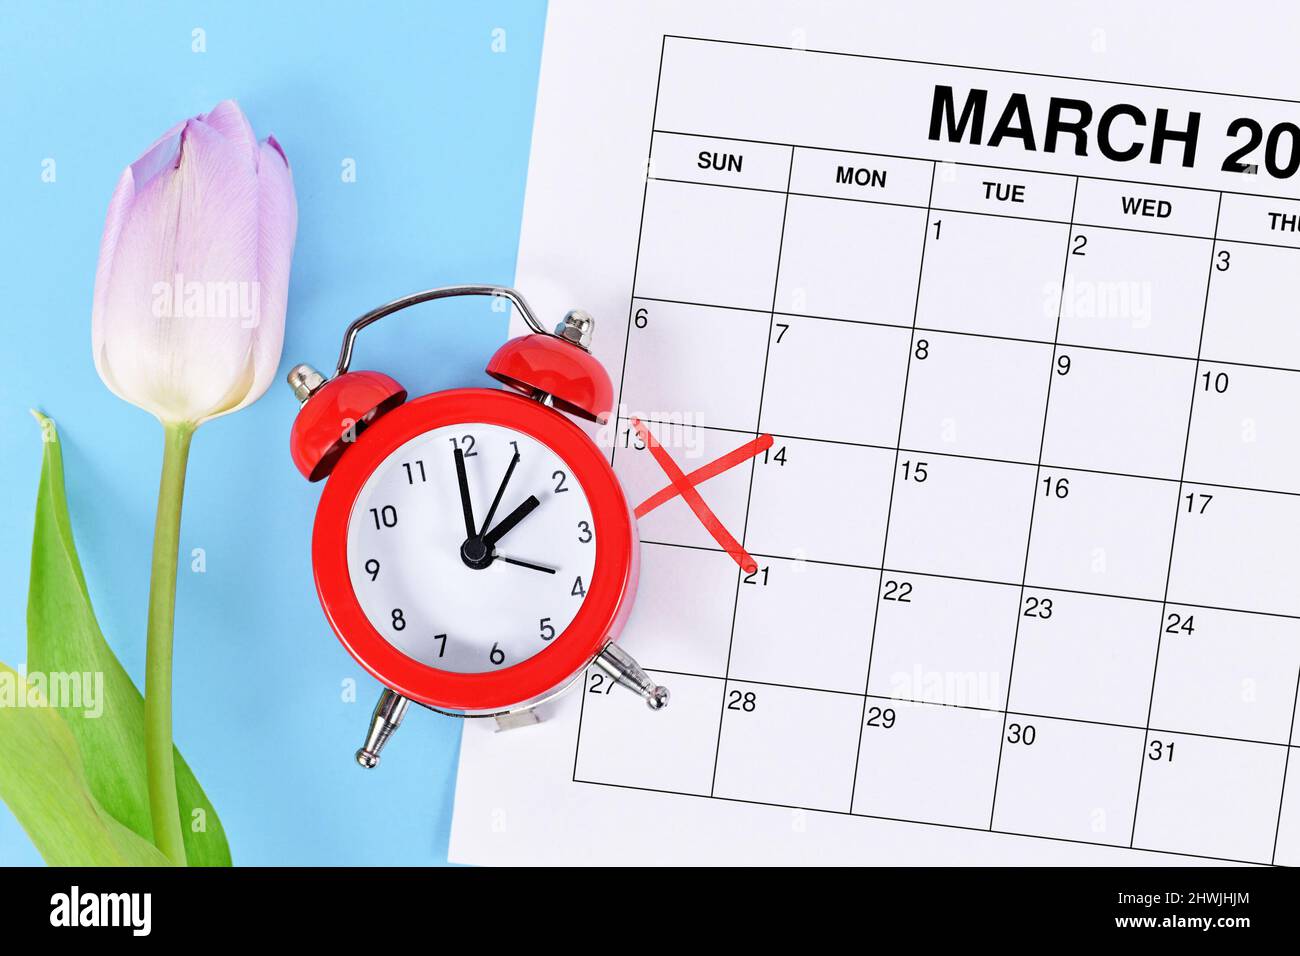 Concetto di modifica dell'ora per l'ora legale negli Stati Uniti il 13th marzo con sveglia rossa e foglio di calendario con data contrassegnata in rosso sul bl Foto Stock